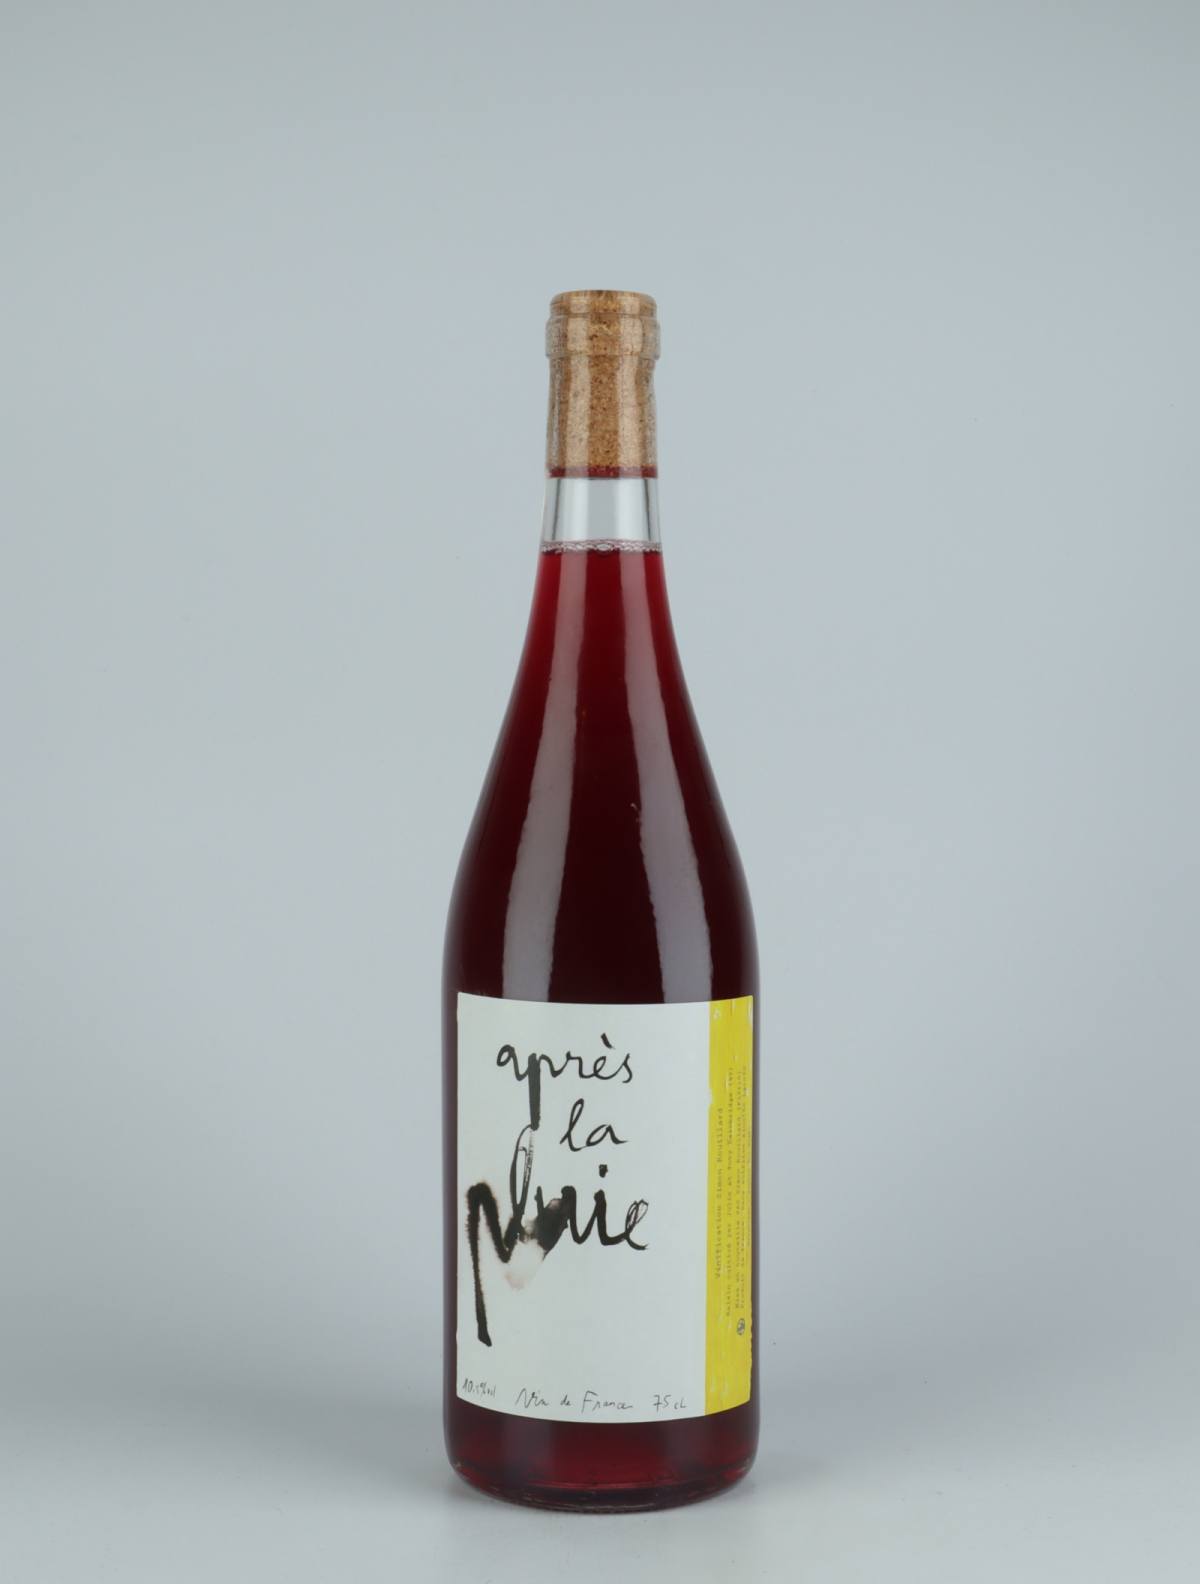 A bottle 2020 Après la pluie Red wine from Simon Rouillard, Loire in France